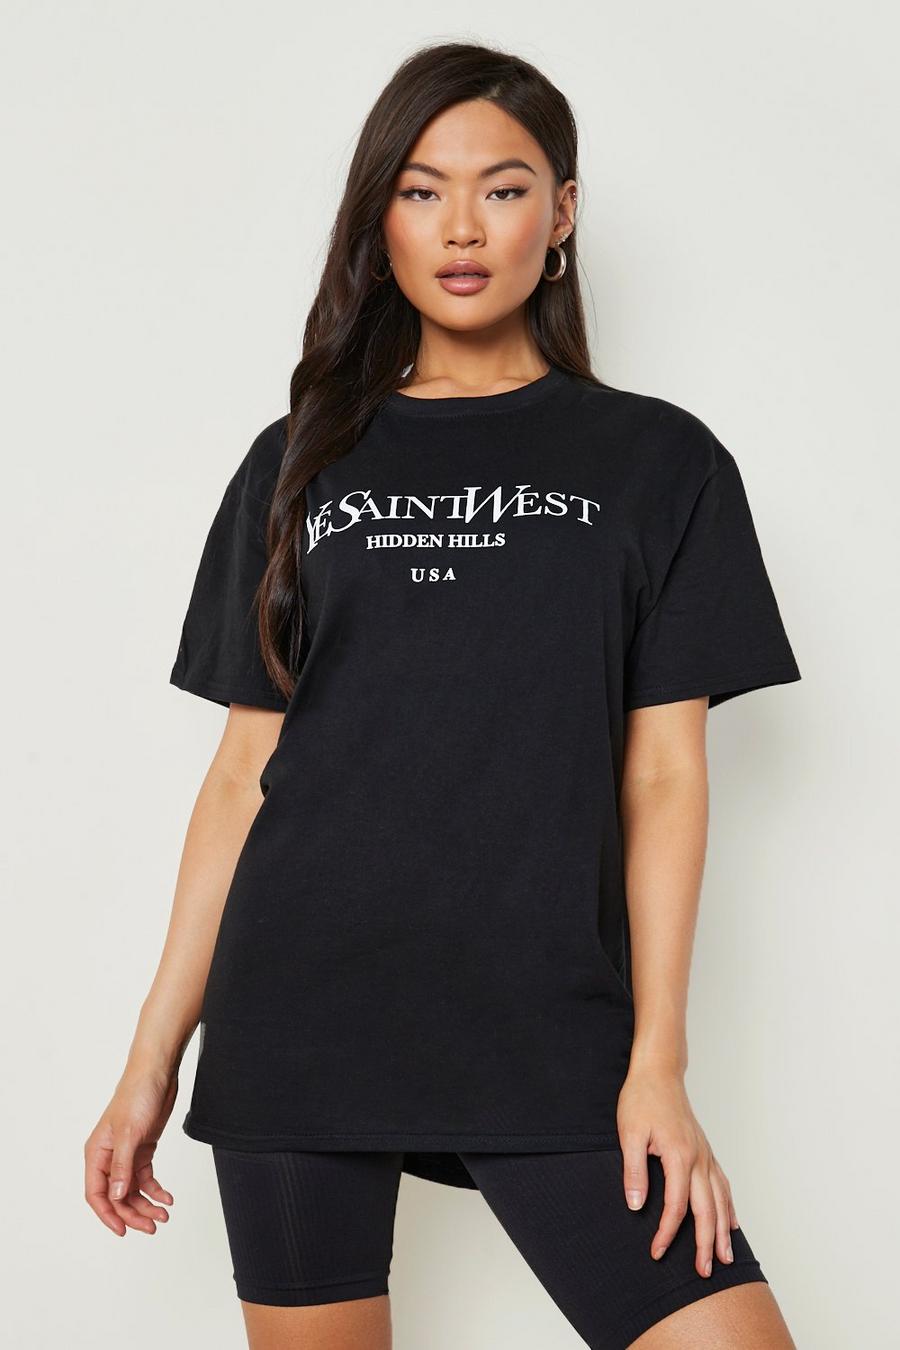 Ye Saint West Oversized T-shirt | boohoo